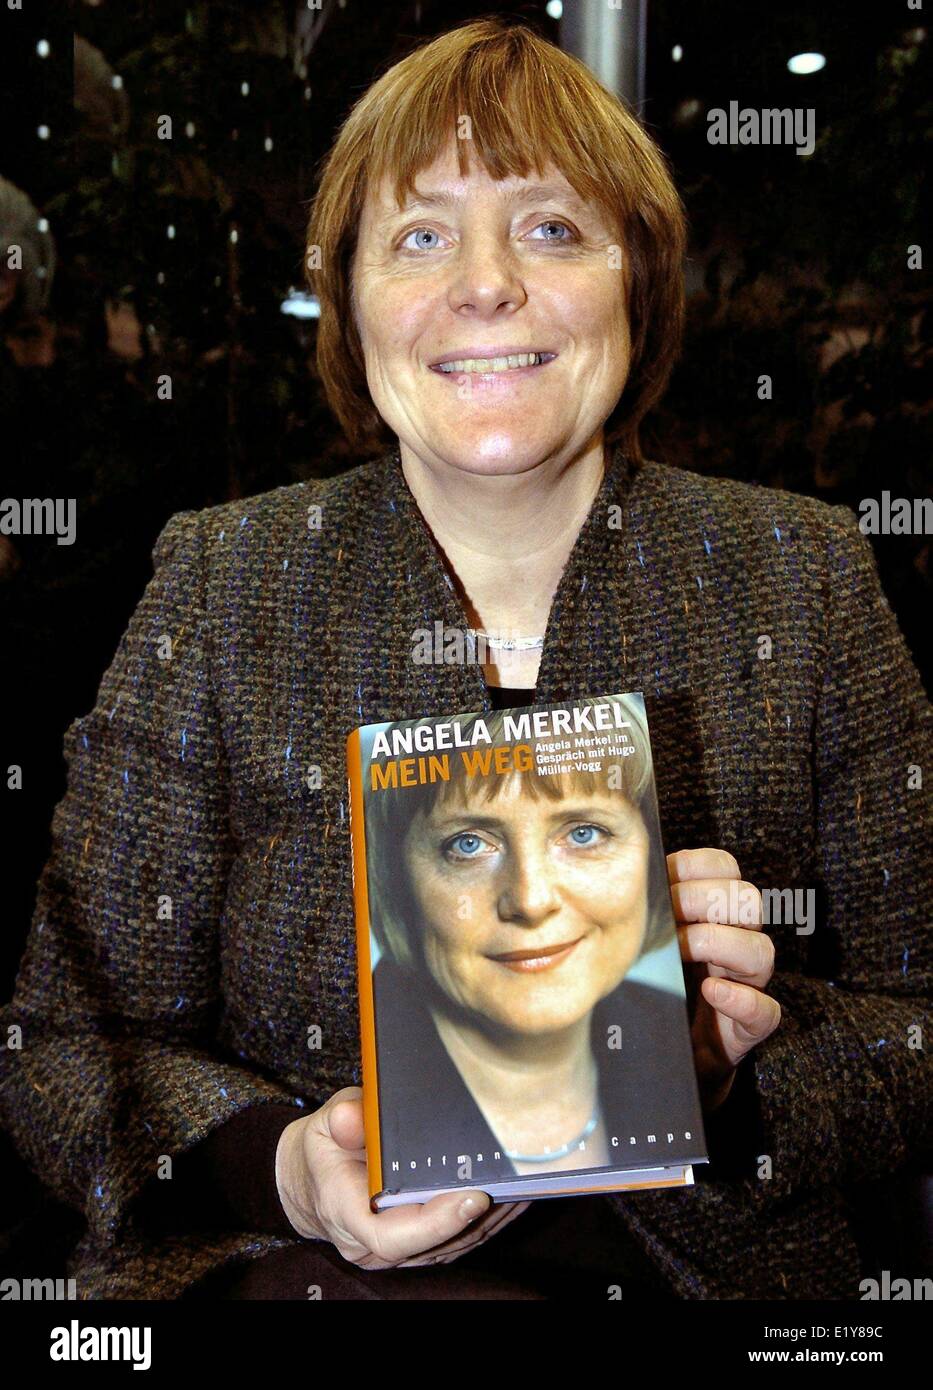 Mujer presidenta de la CDU, Angela Merkel, presenta su libro 'Mein Weg" en la feria del libro de Leipzig (26.03.2004). Foto: Peter Endig Foto de stock